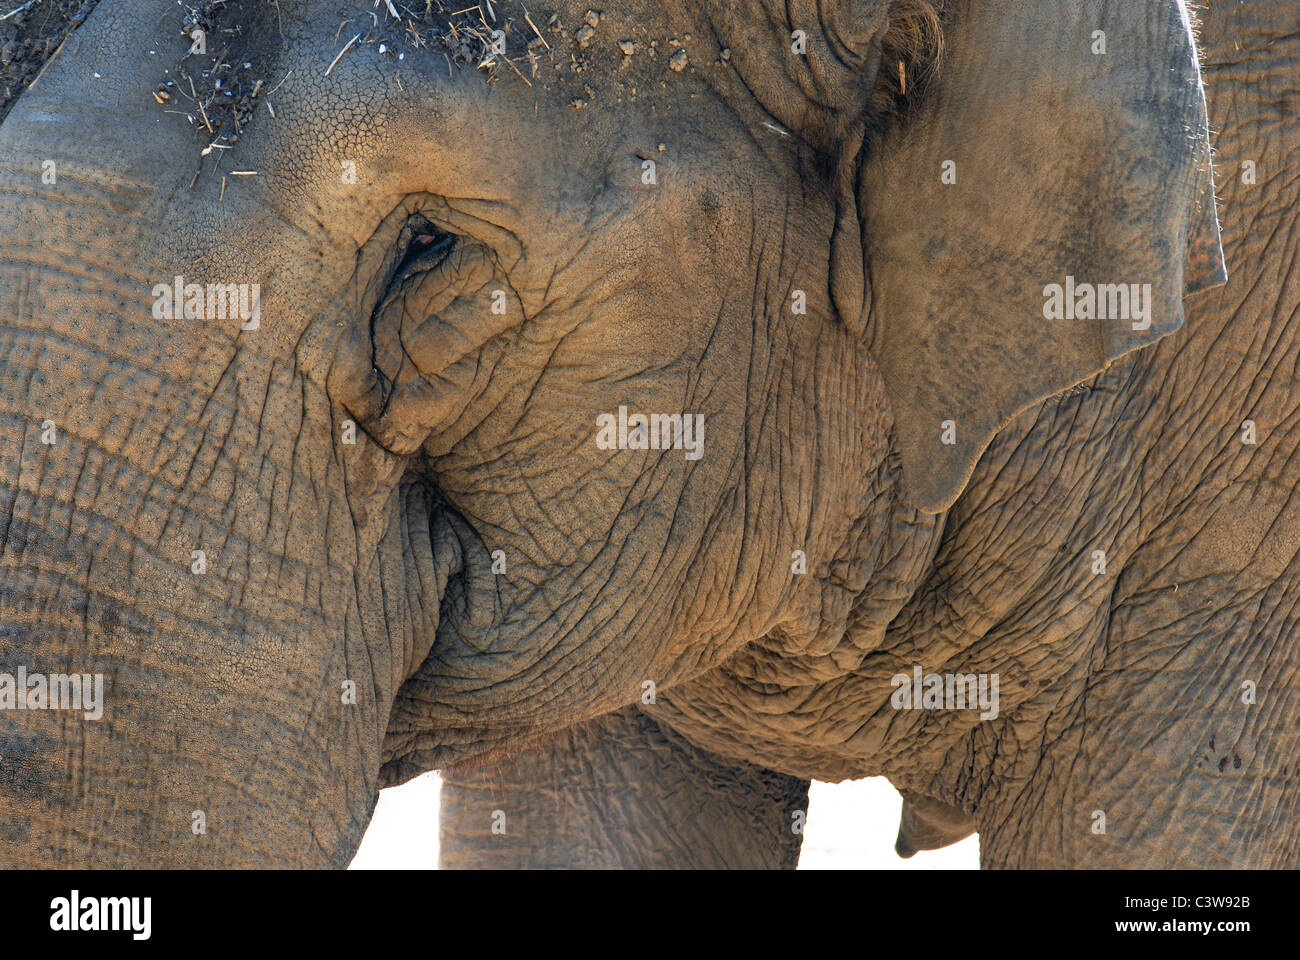 Elephant close up. Ritratto del suo volto. Pelle rugosa texture. Sfondo bianco Foto Stock